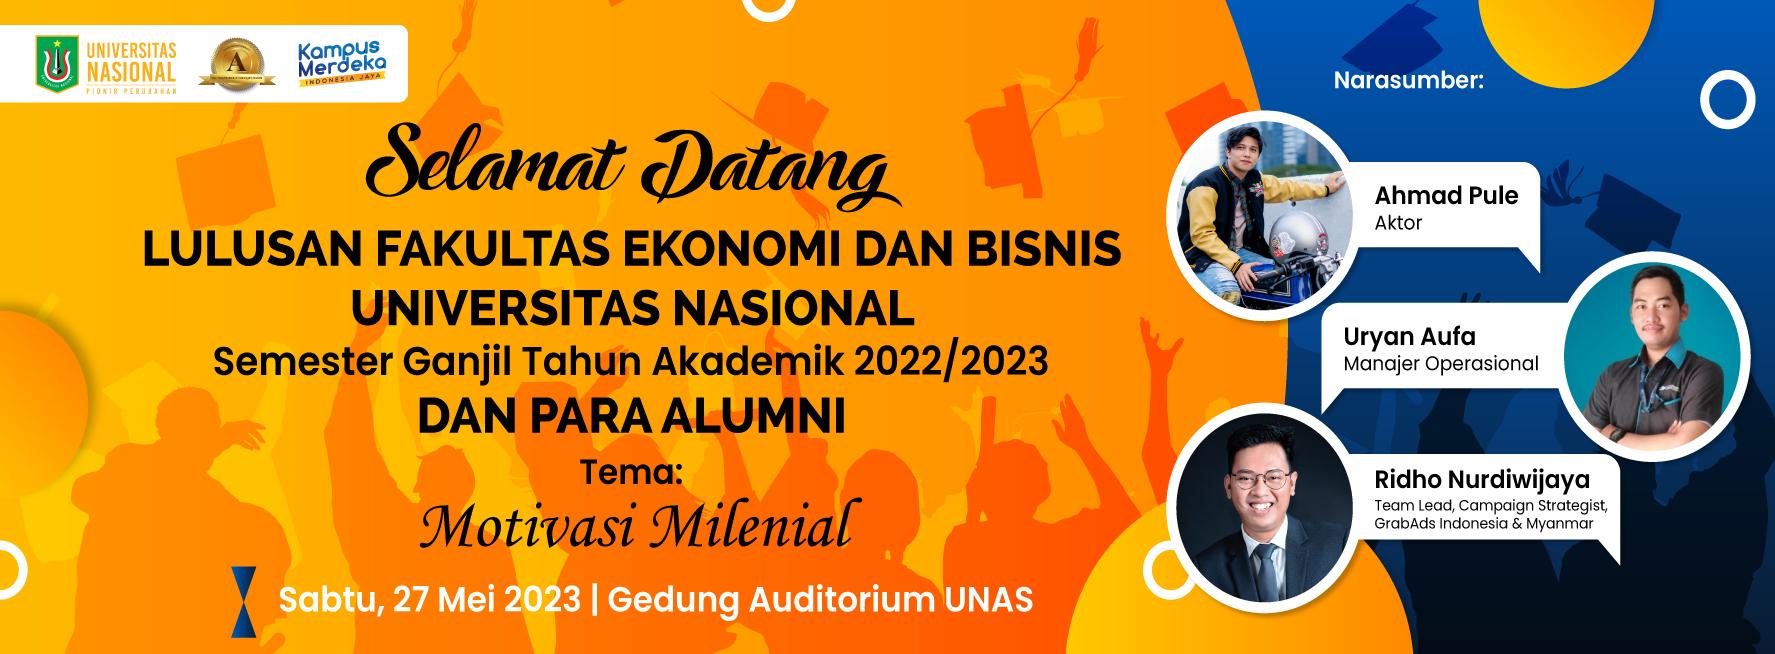 Yudisium Fakultas Ekonomi dan Bisnis Universitas Nasional Semester Ganjil Tahun Akademik 2022/2023